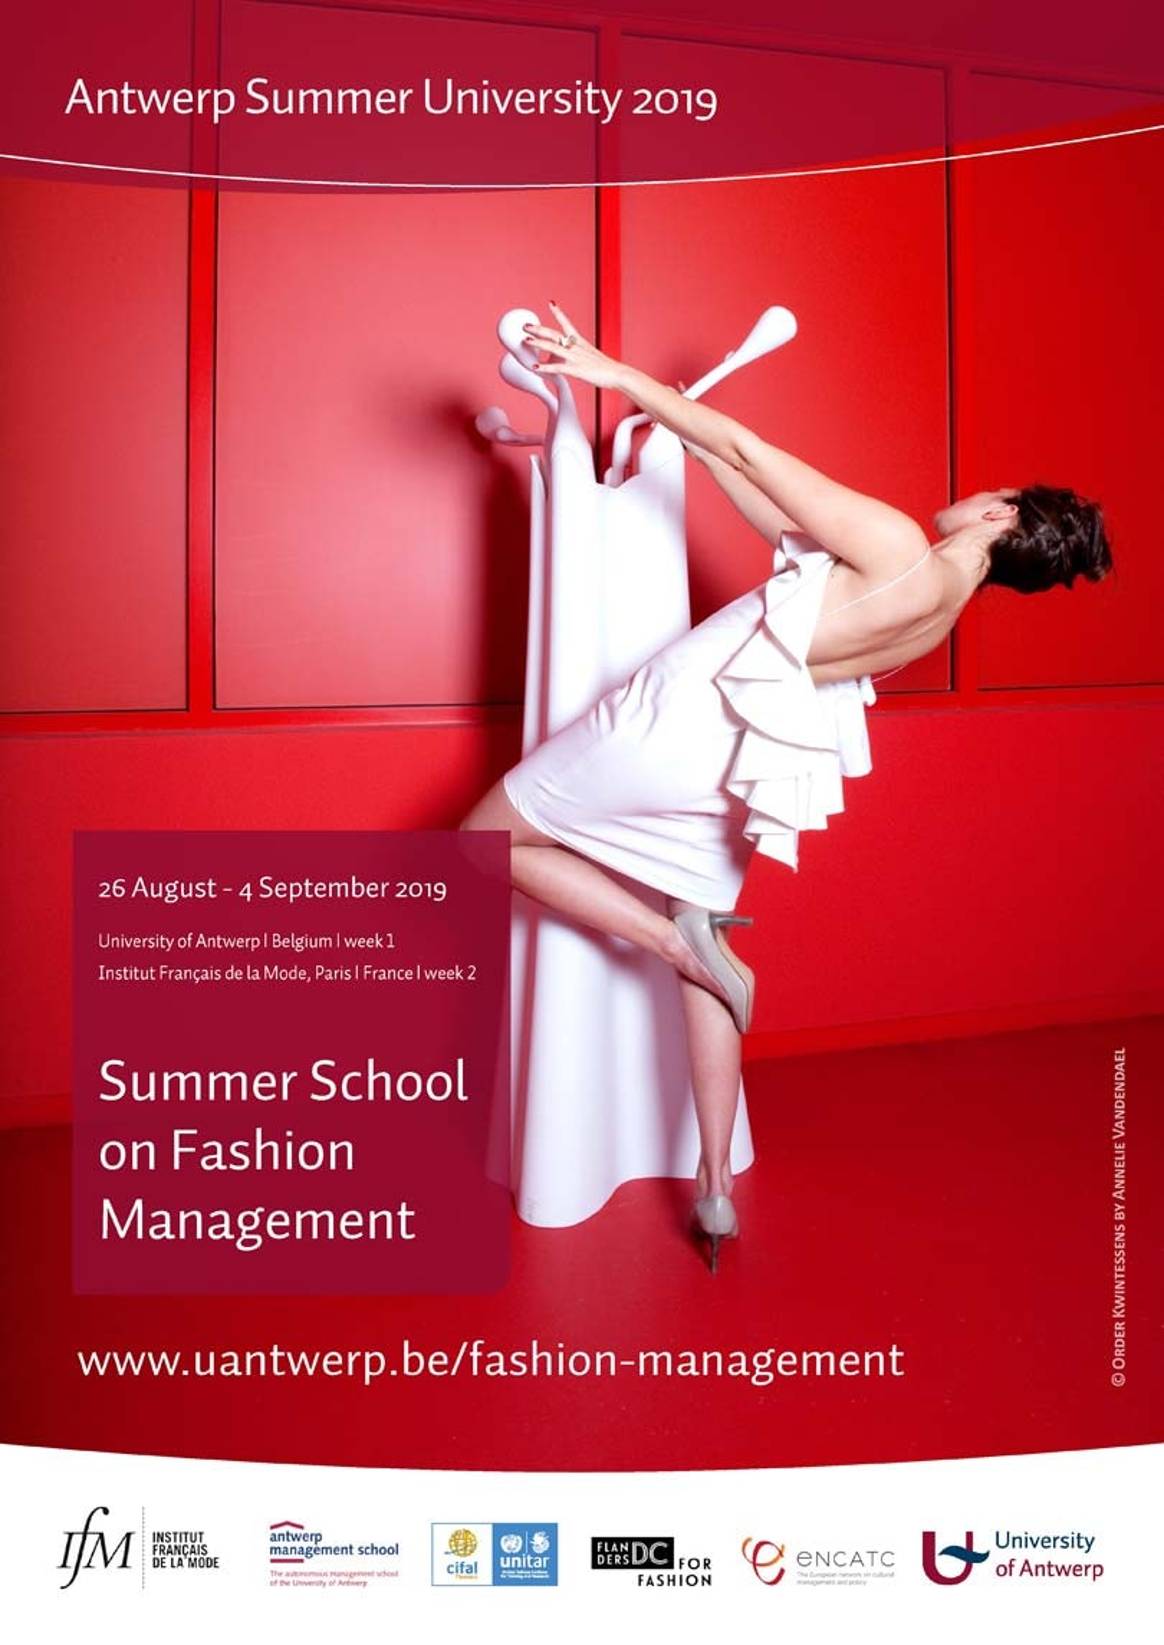 Las escuelas de moda de París y Amberes lanzan una nueva edición de su curso de verano